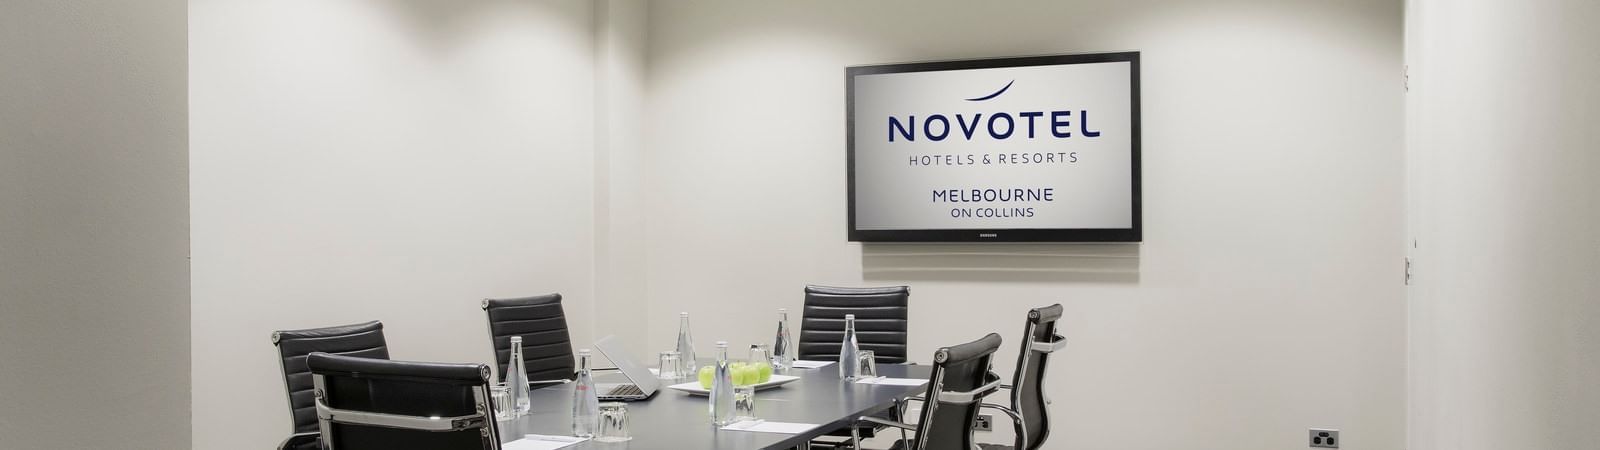 Conference tables setup for event at Novotel Melbourne